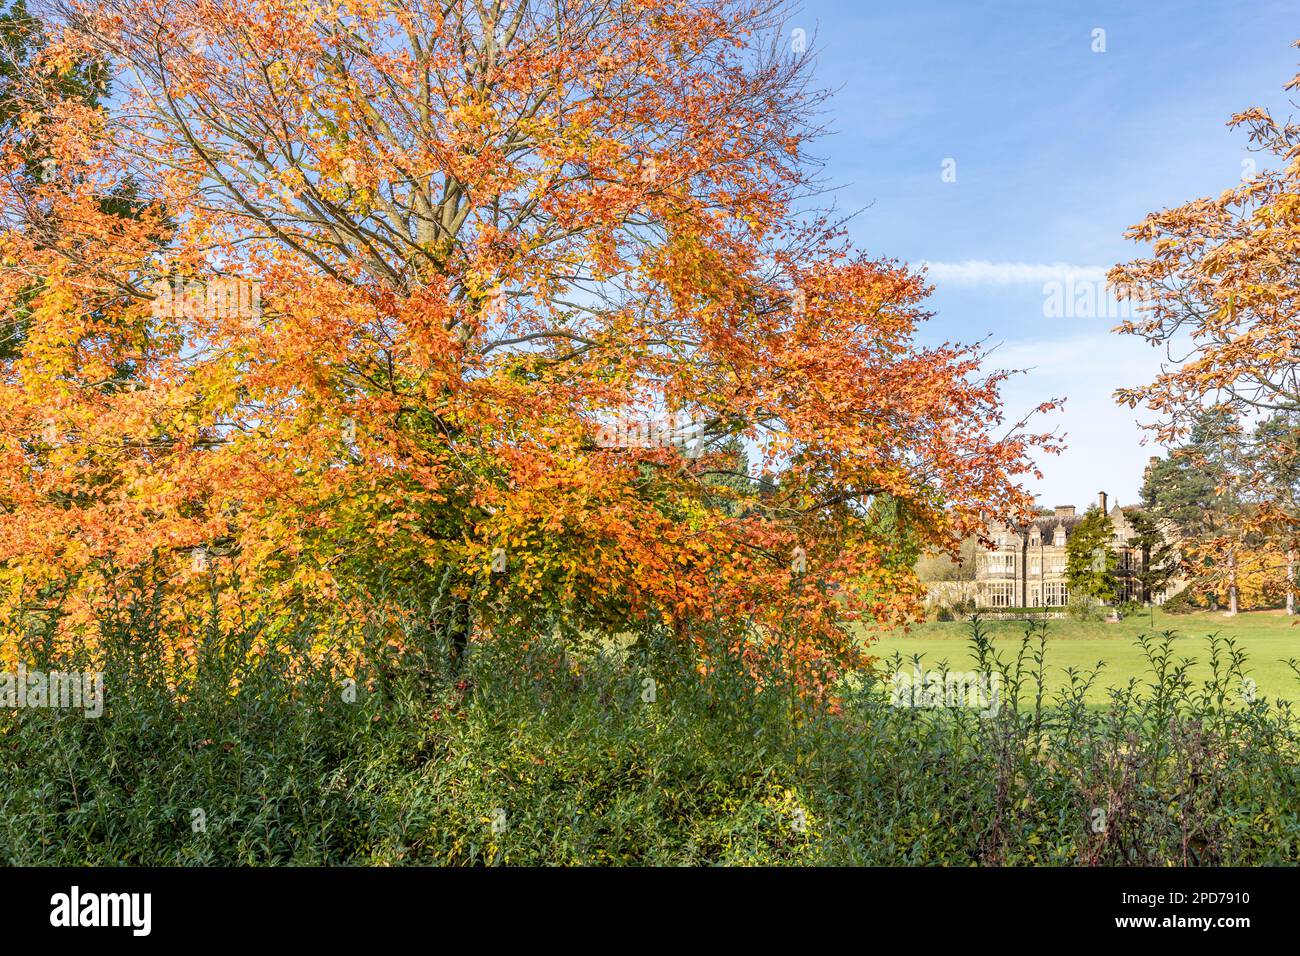 Autumn at Blaisdon Hall, Forest of Dean, Gloucestershire UK Stock Photo